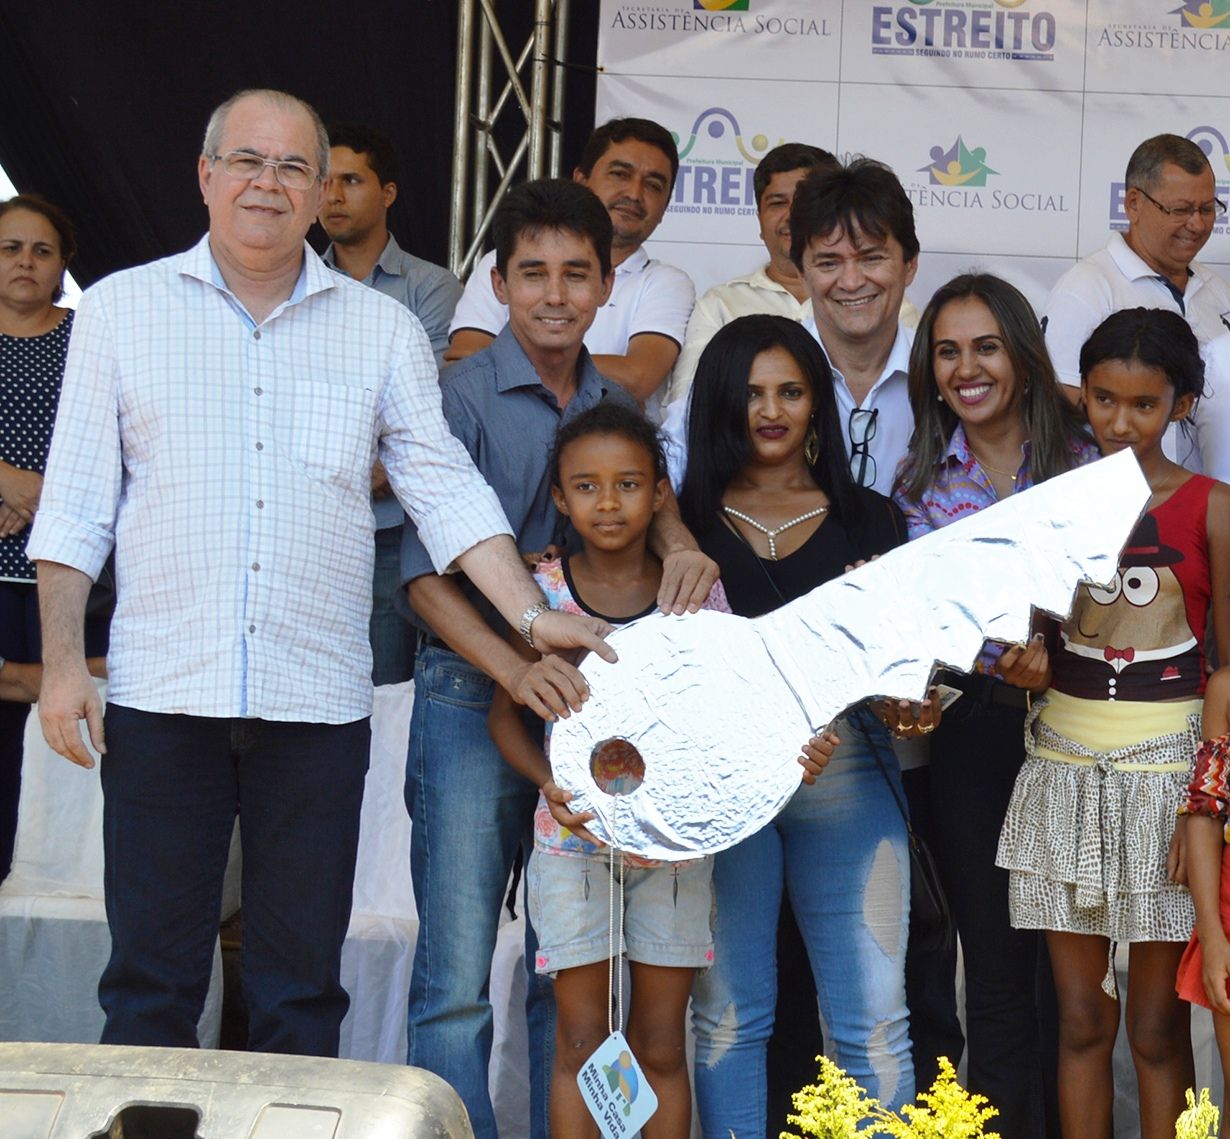 Durante inauguração de conjunto habitacional Hildo Rocha garante recursos para Centro de Convivência de Idosos em Estreito